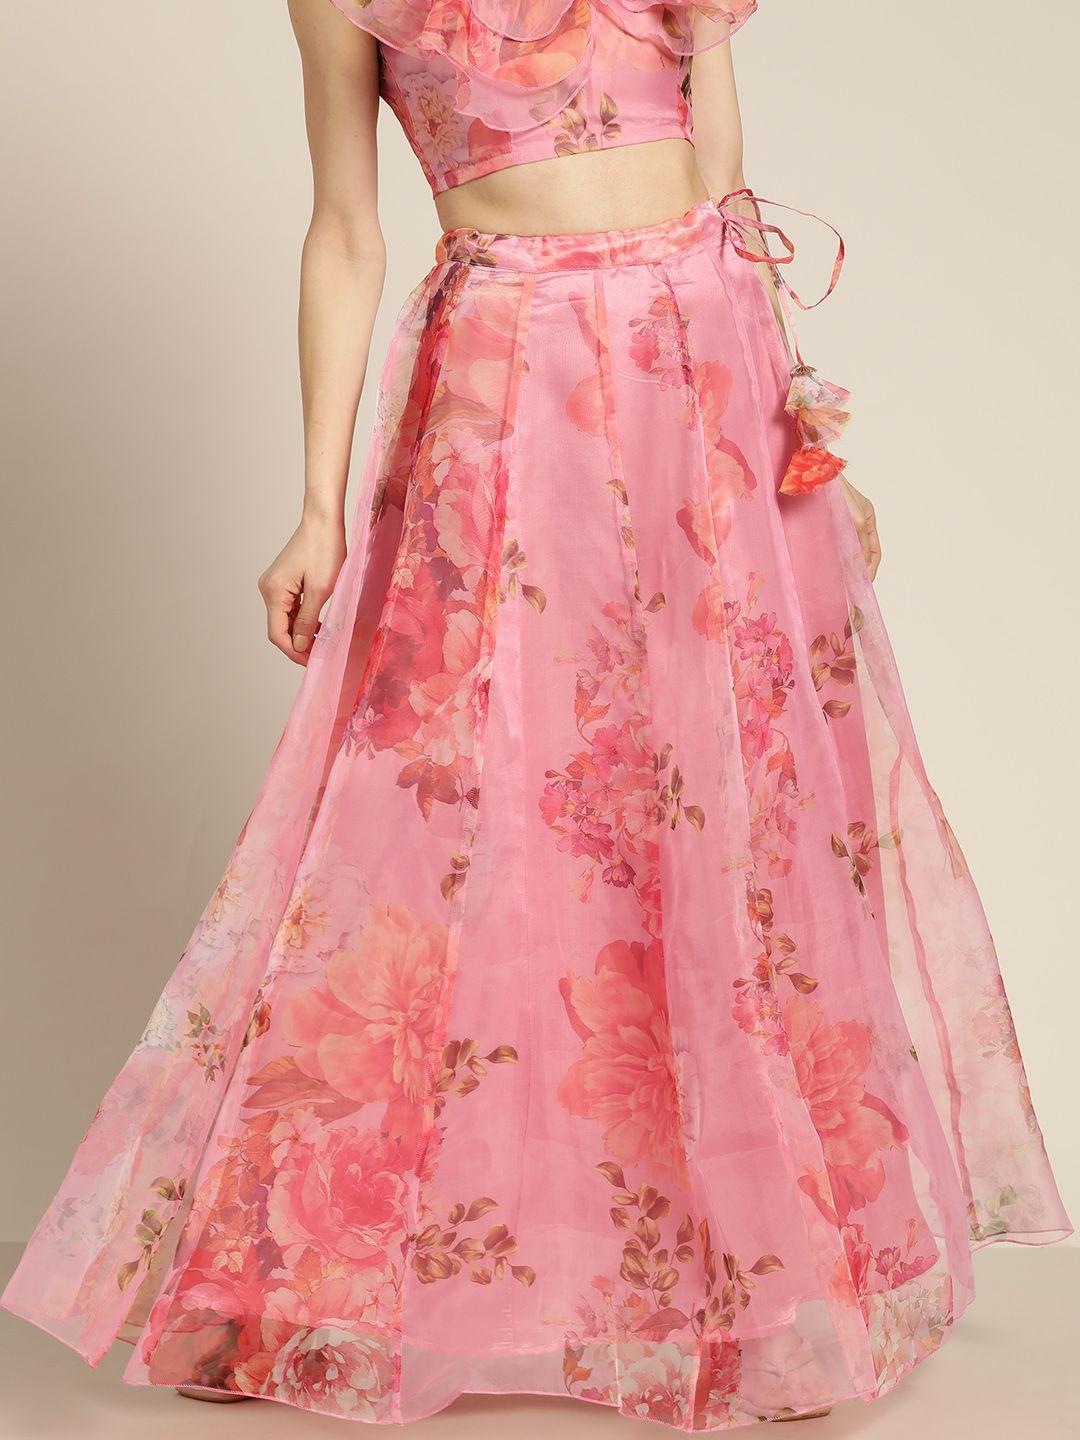 shae by sassafras pink floral organza flared skirt